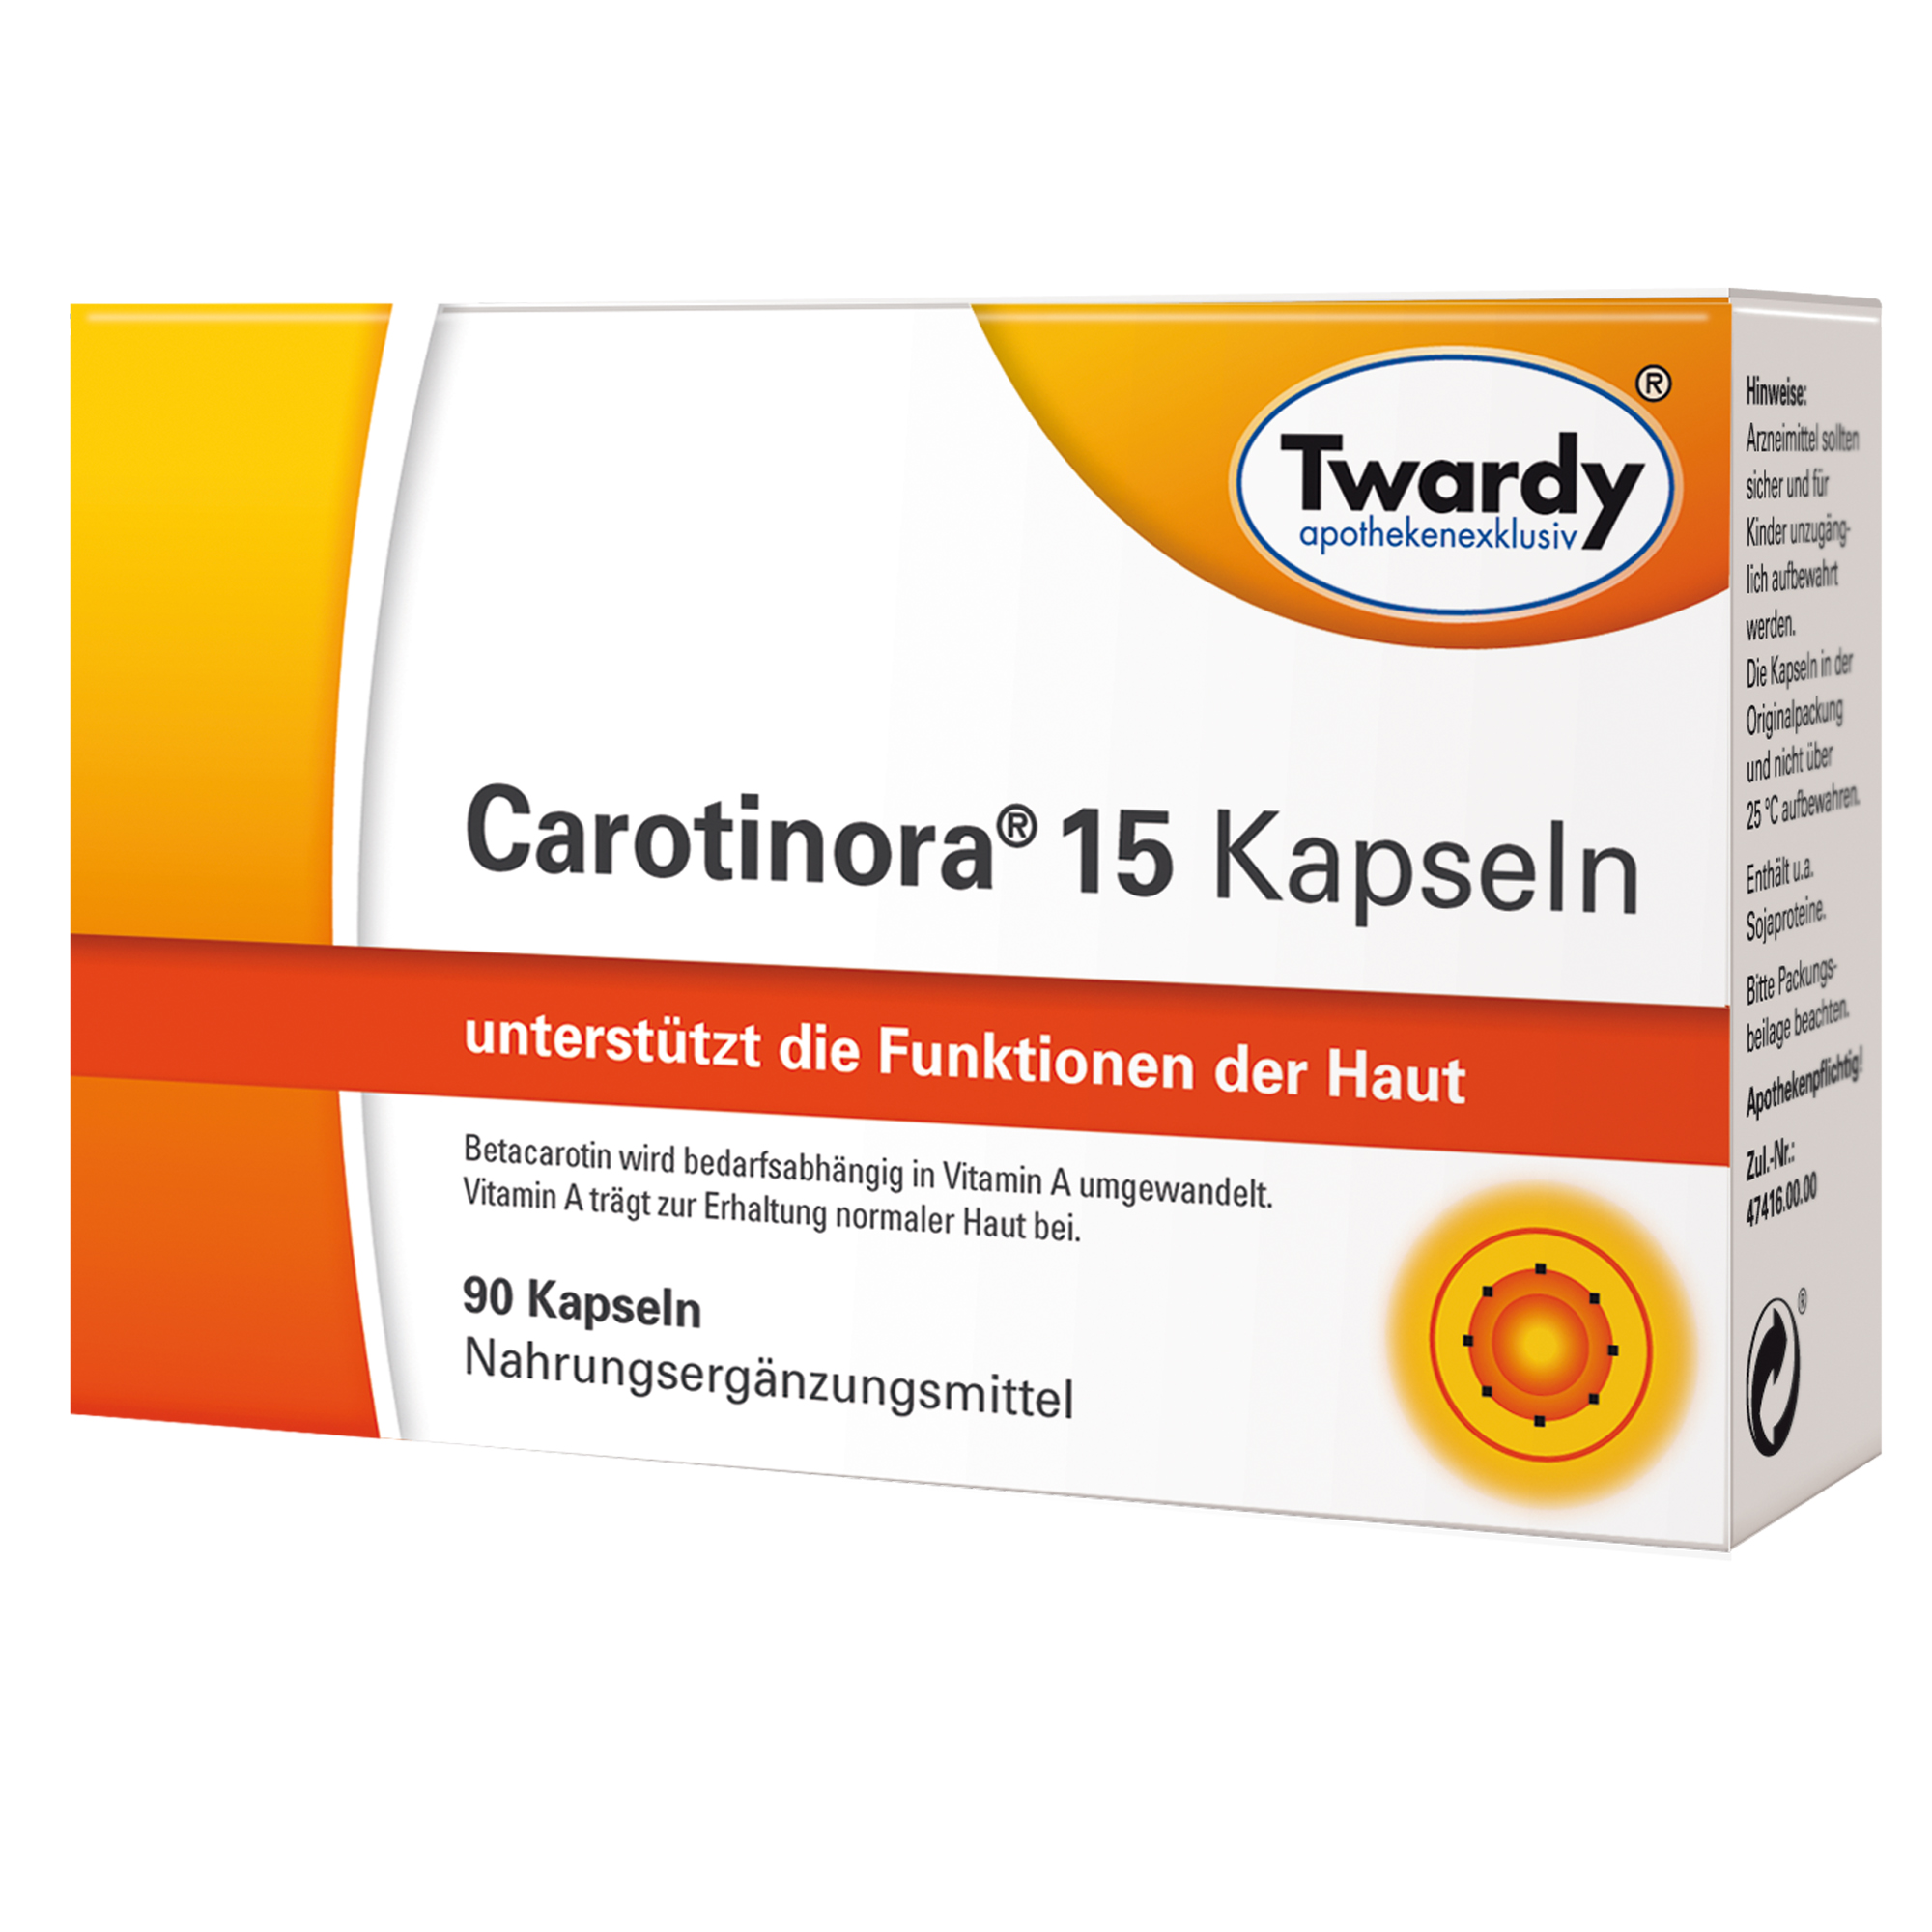 Carotinora® 15 Kapseln – PZN 11594474